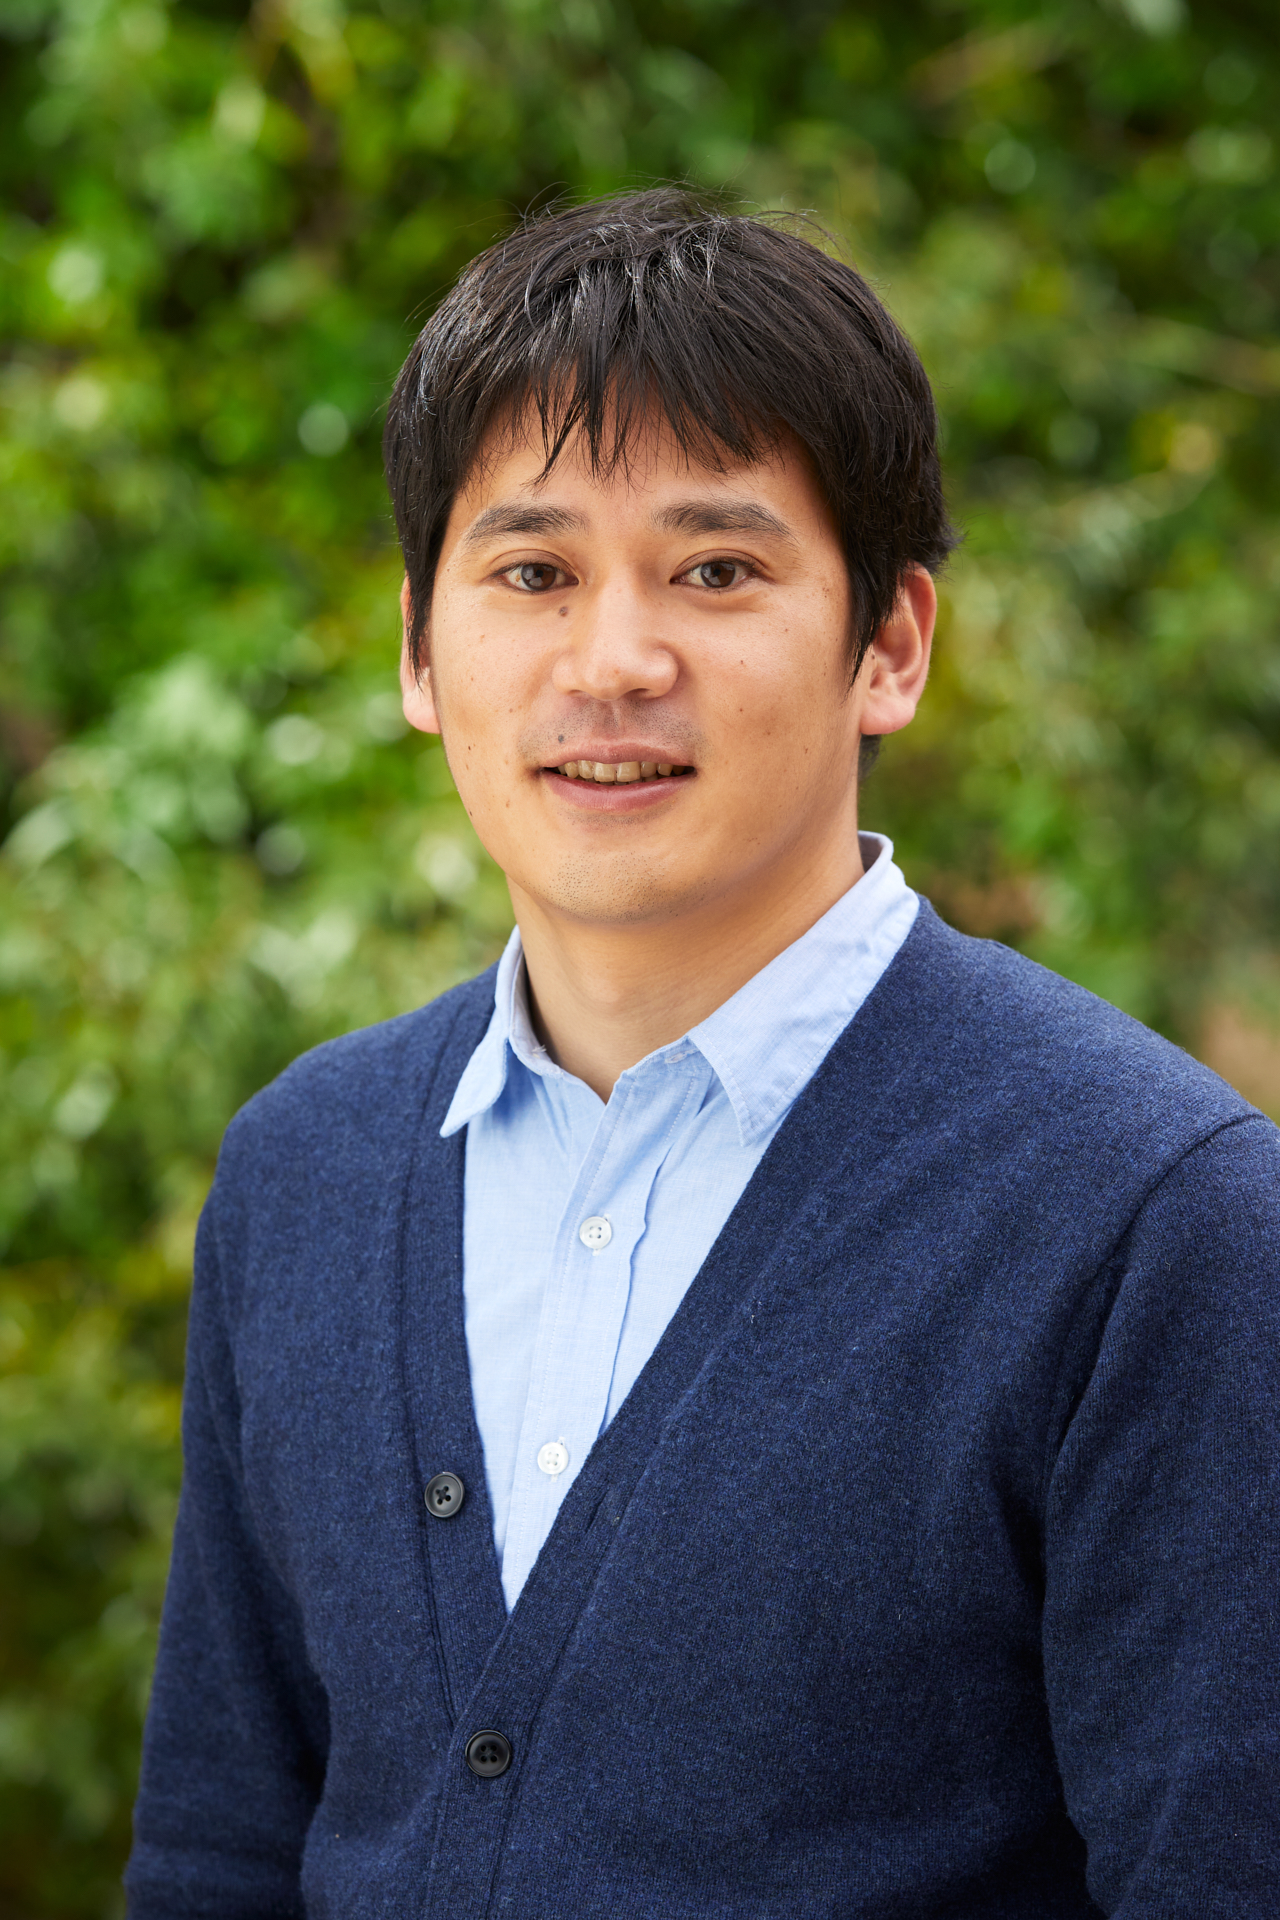 panelist Dr. Shinichiro Asayama